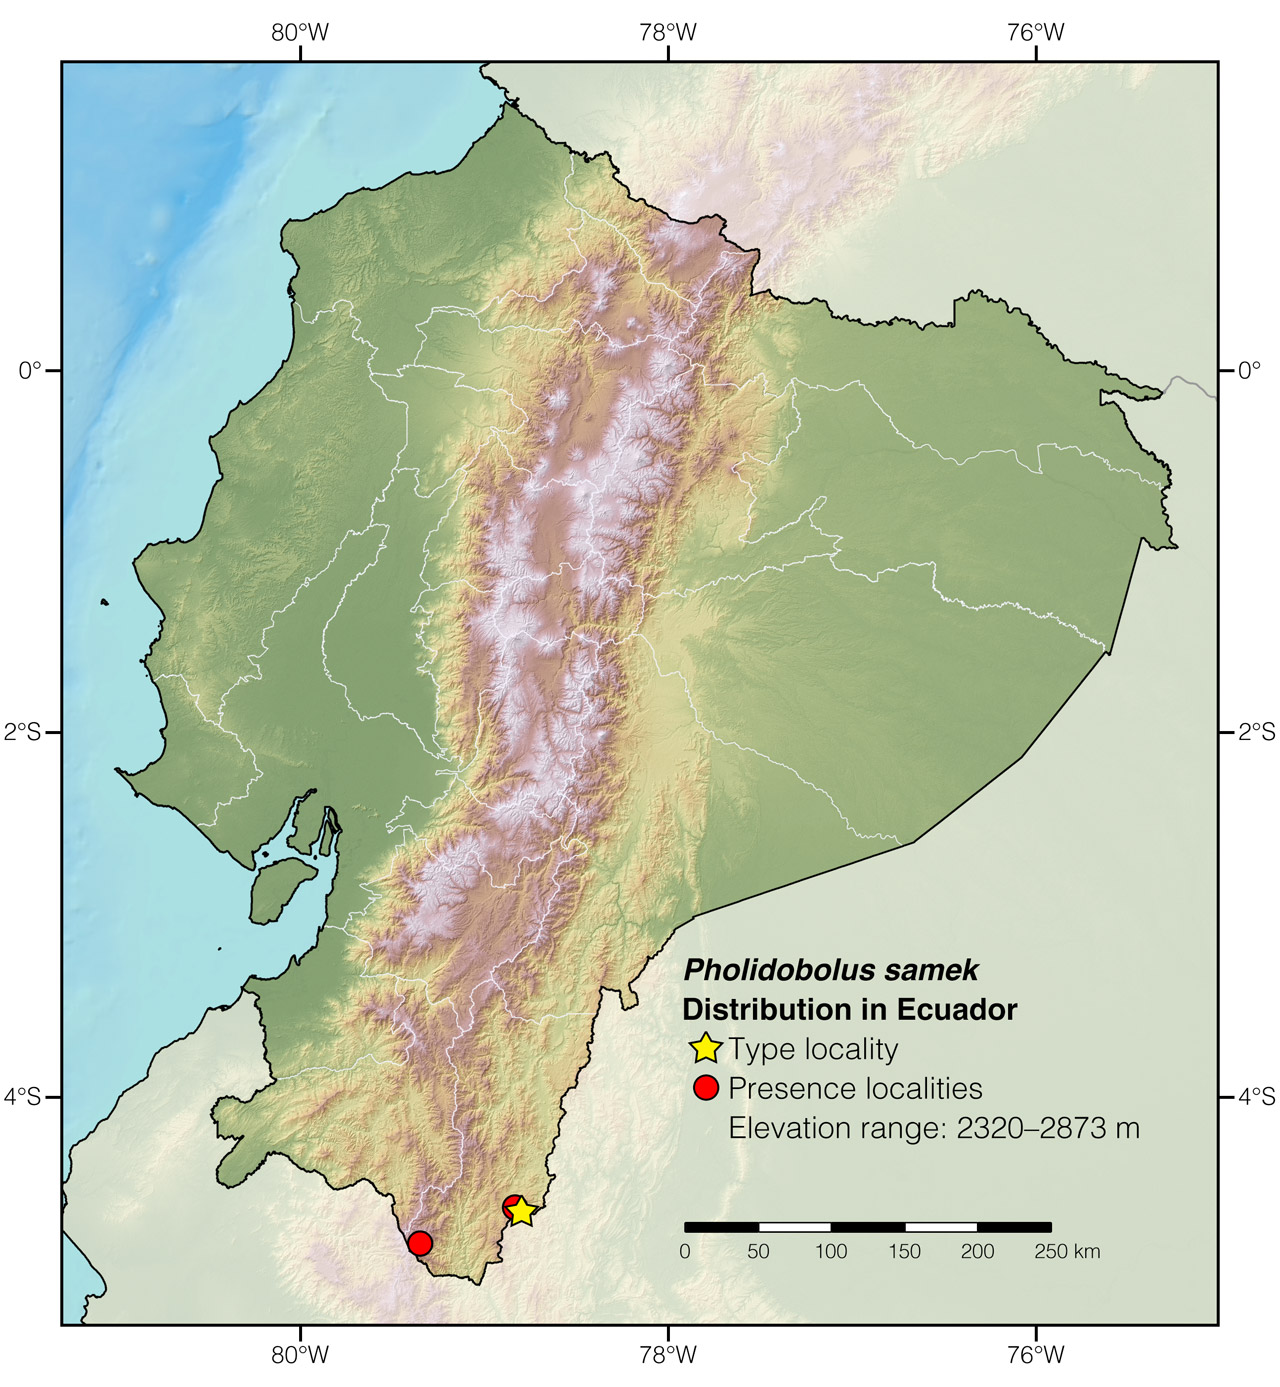 Distribution of Pholidobolus samek in Ecuador